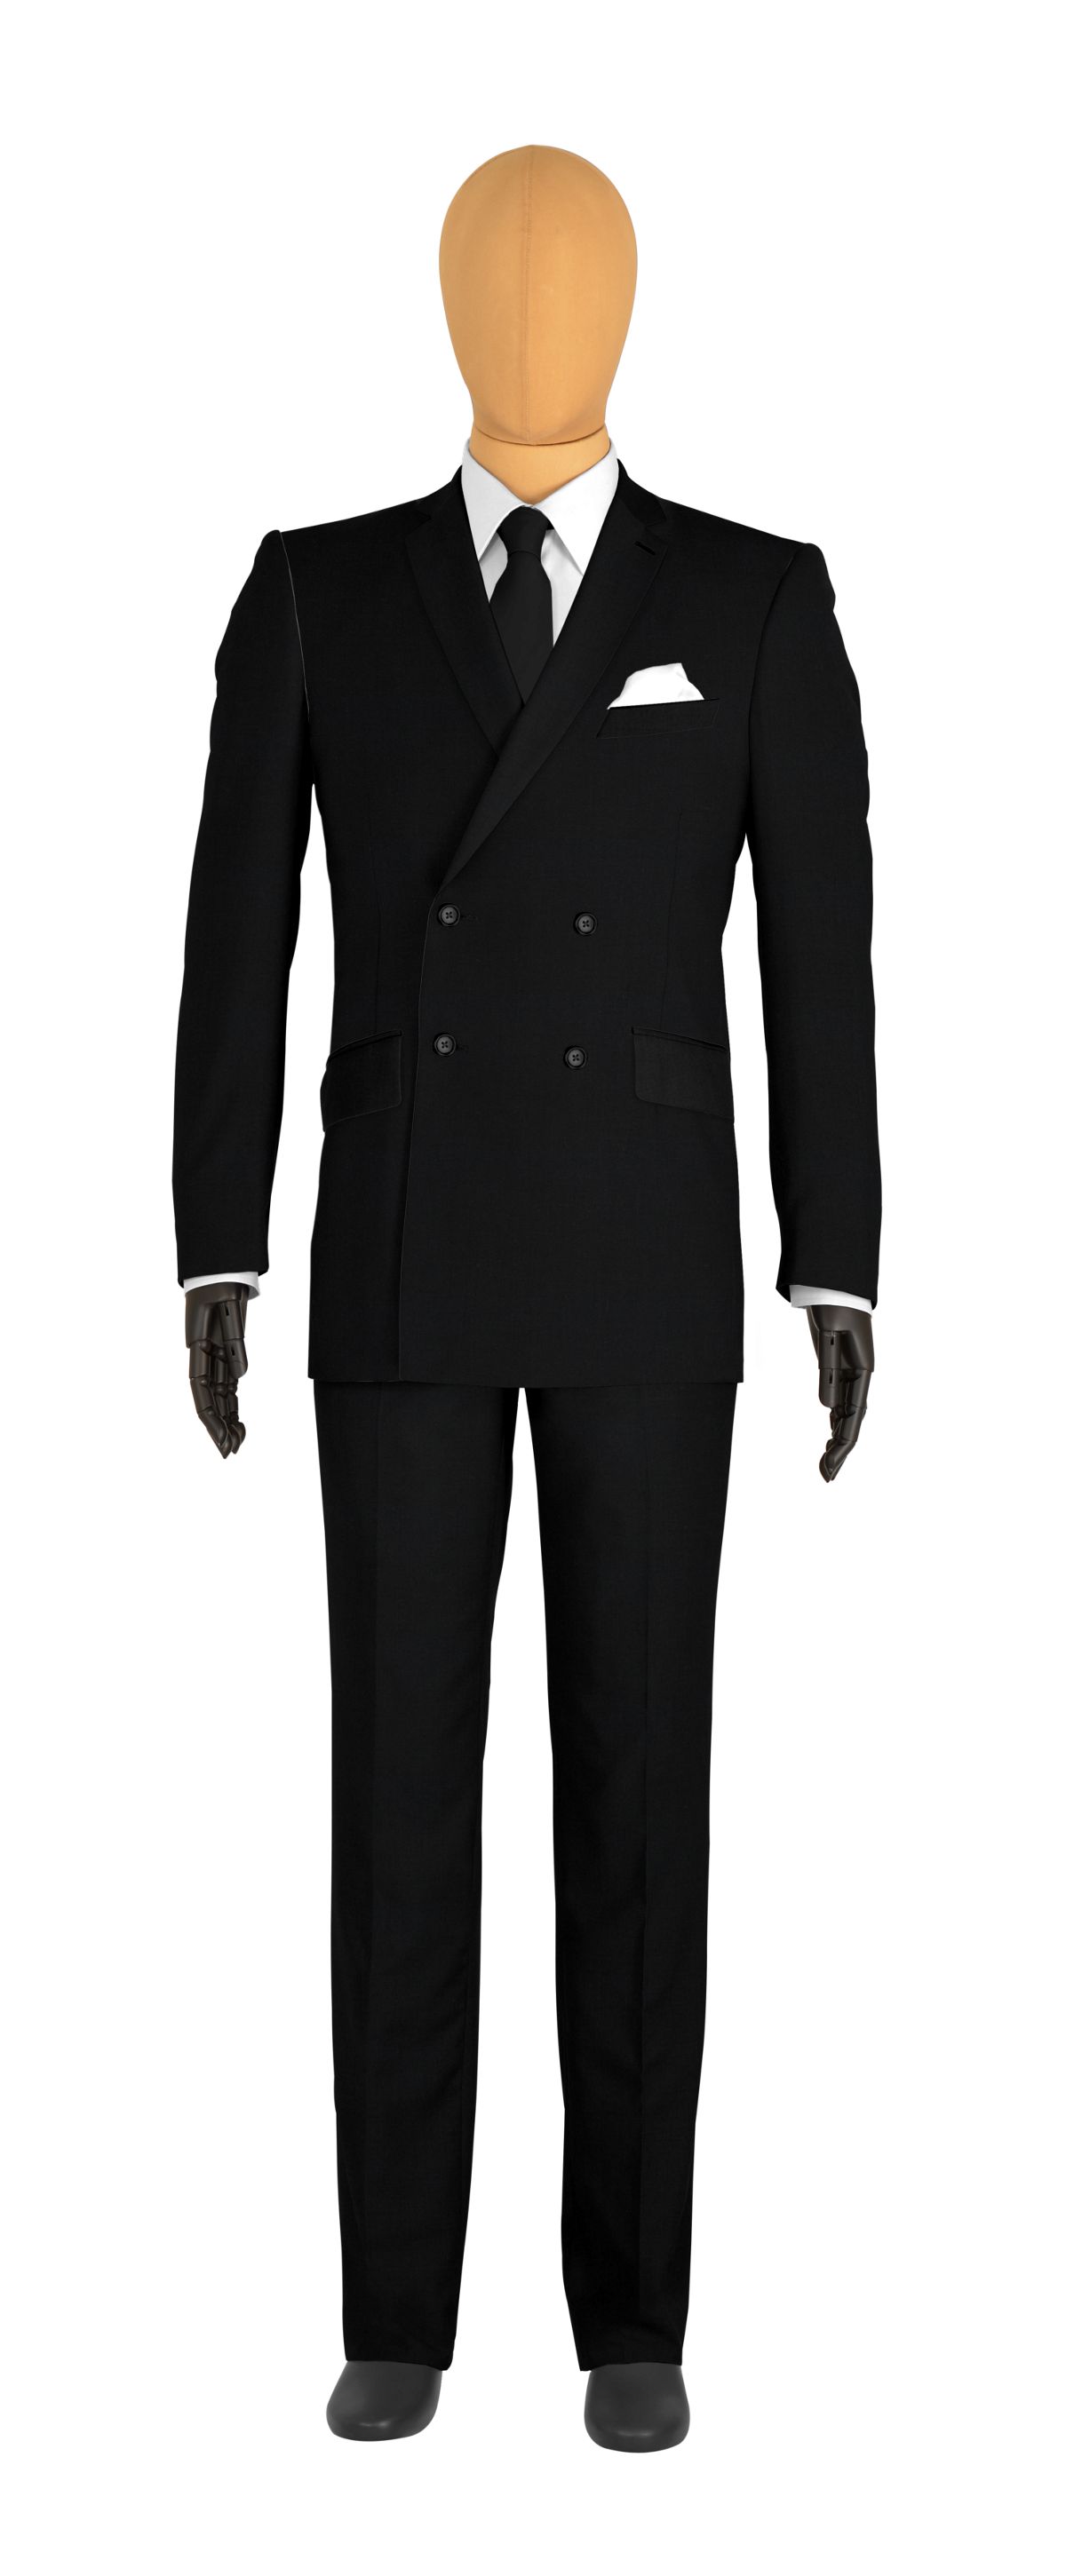 costume veste croisée noir doublure grise